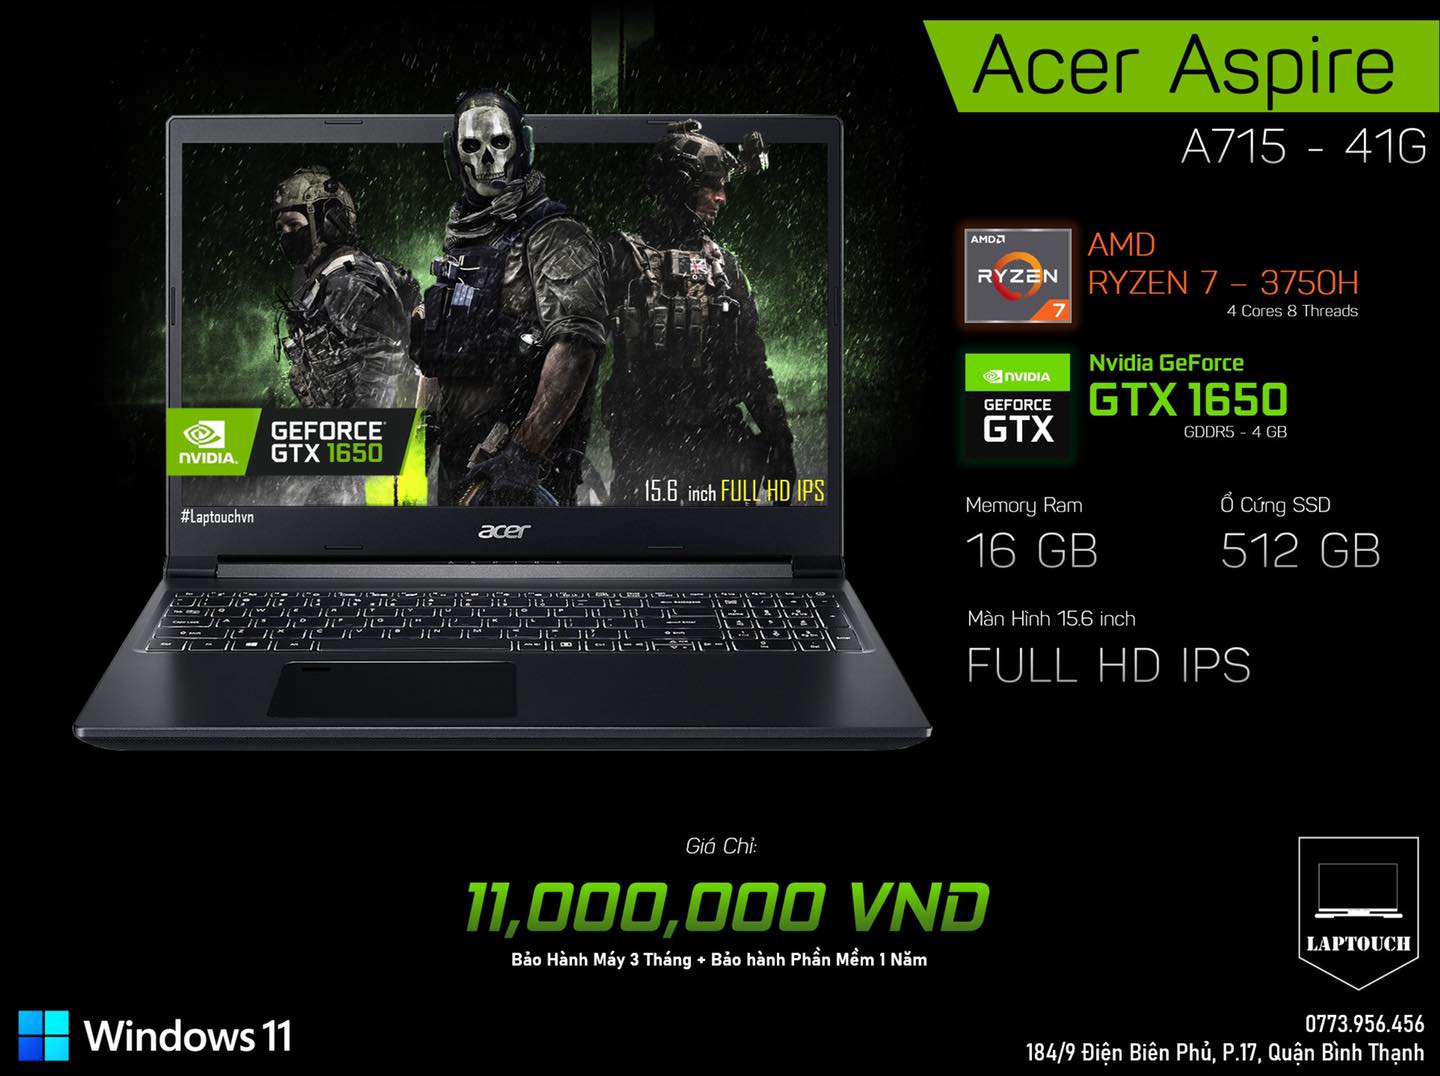 Acer Aspire A715 - 41G